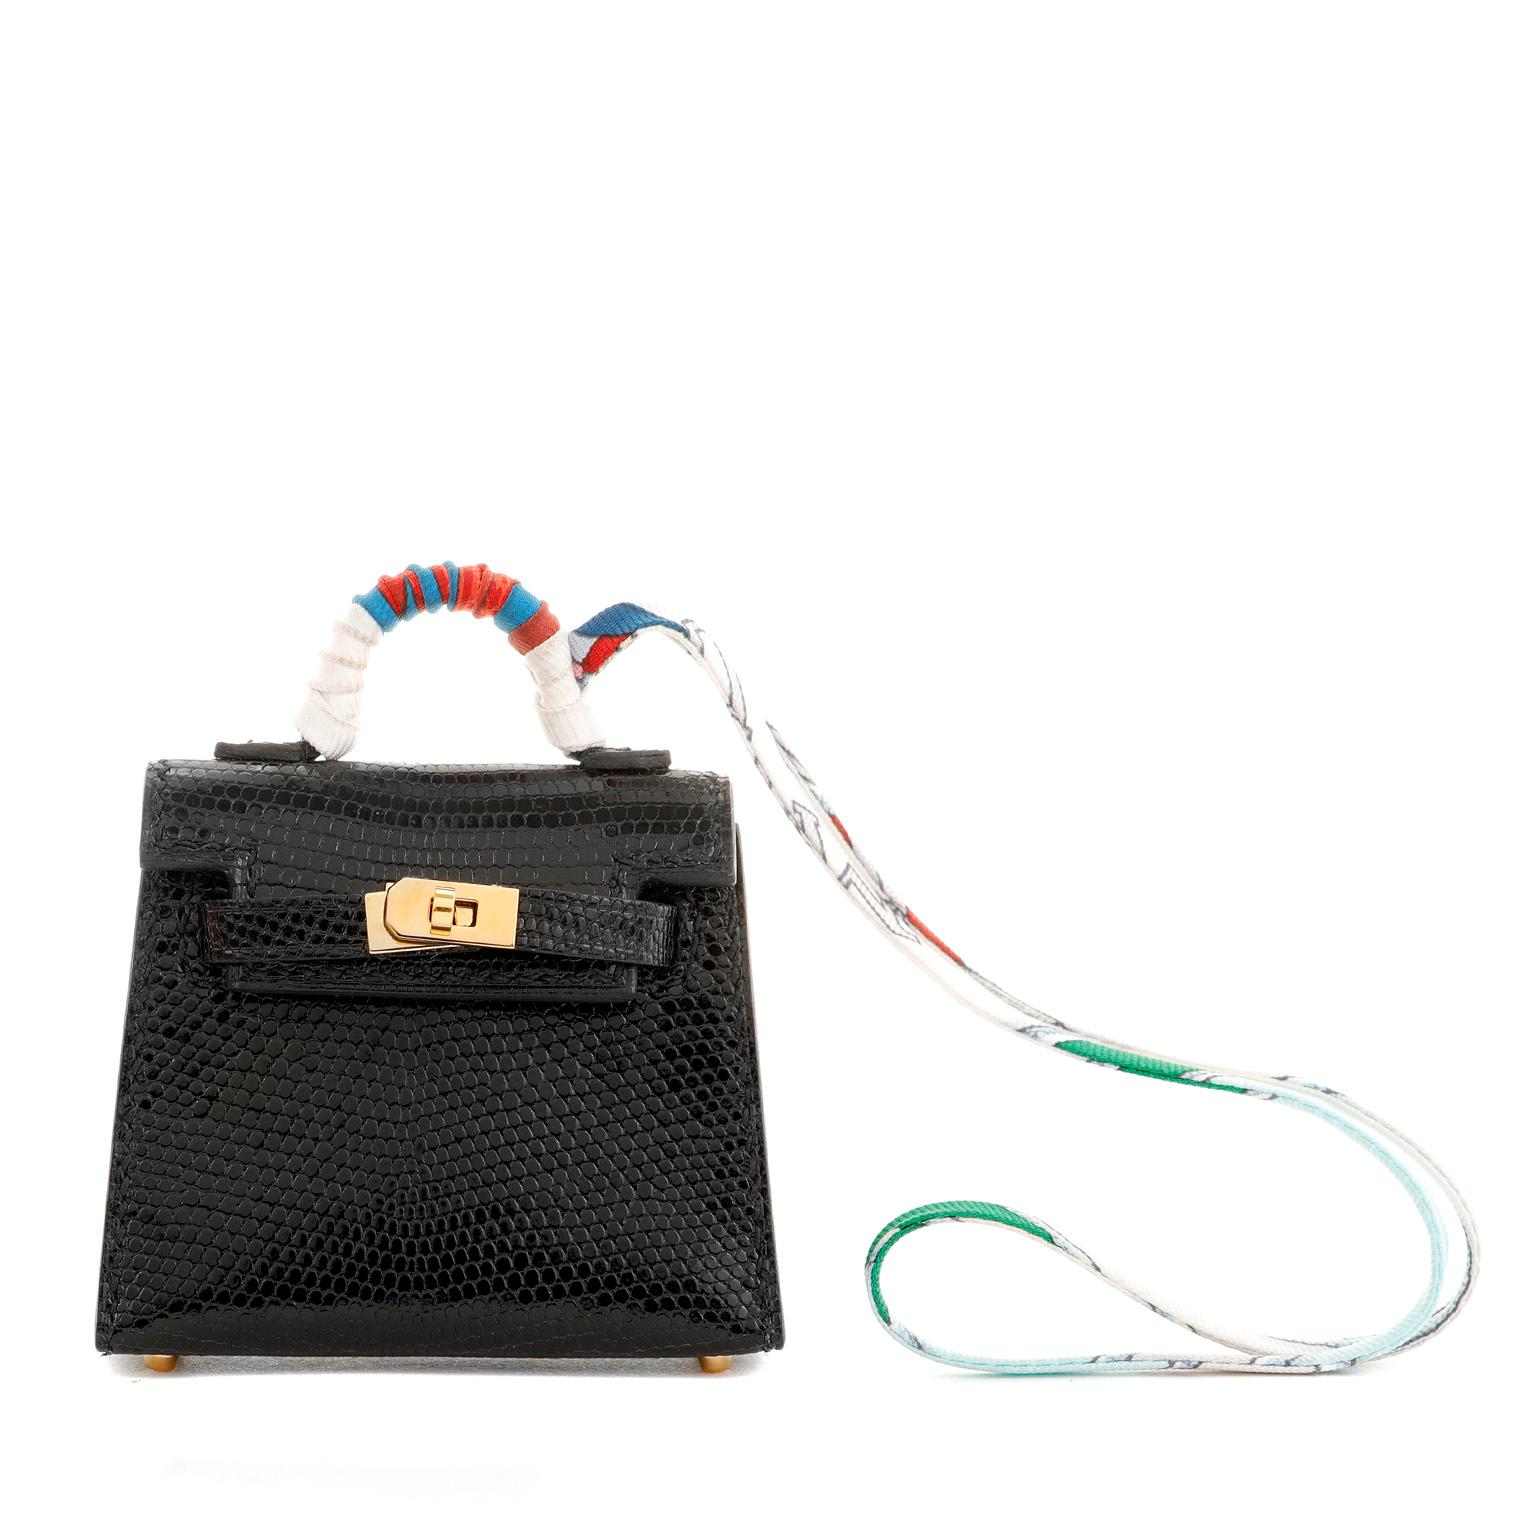 Diese authentische Hermès Black Lizard Micro Kelly Bag Charm ist in tadellosem Zustand.  Geschmückt mit einem bunten Twilly ist diese kleine exotische Kelly der ultimative Taschen-Charme.  Schwarzes Eidechsenleder mit goldener Hardware.  Inklusive